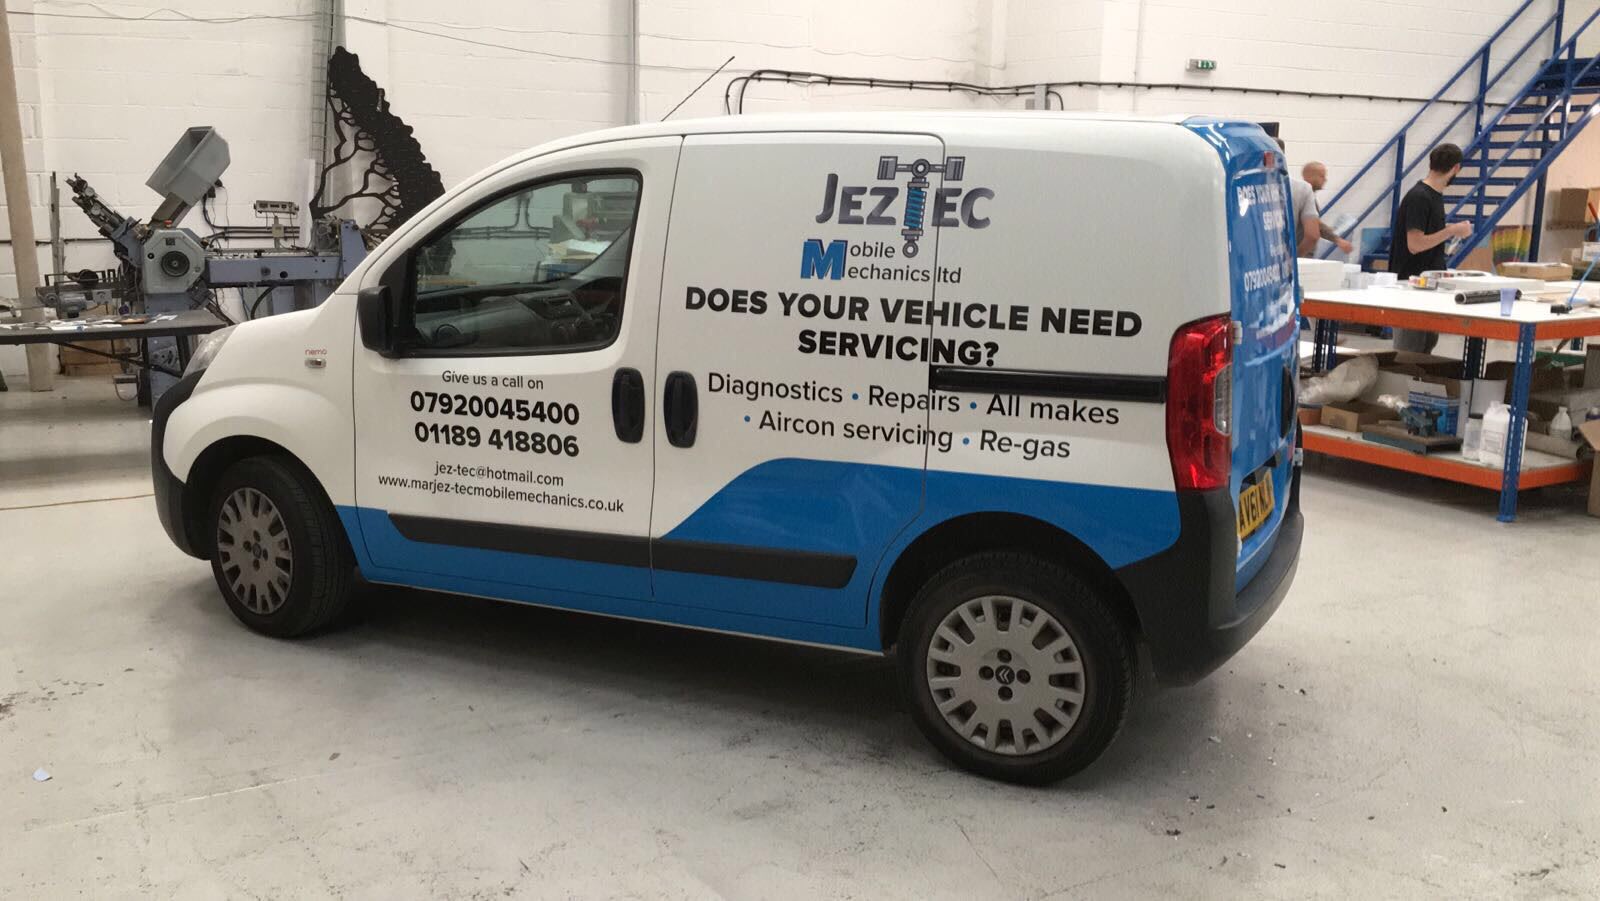 Images Jez-Tec Mobile Mechanics Ltd